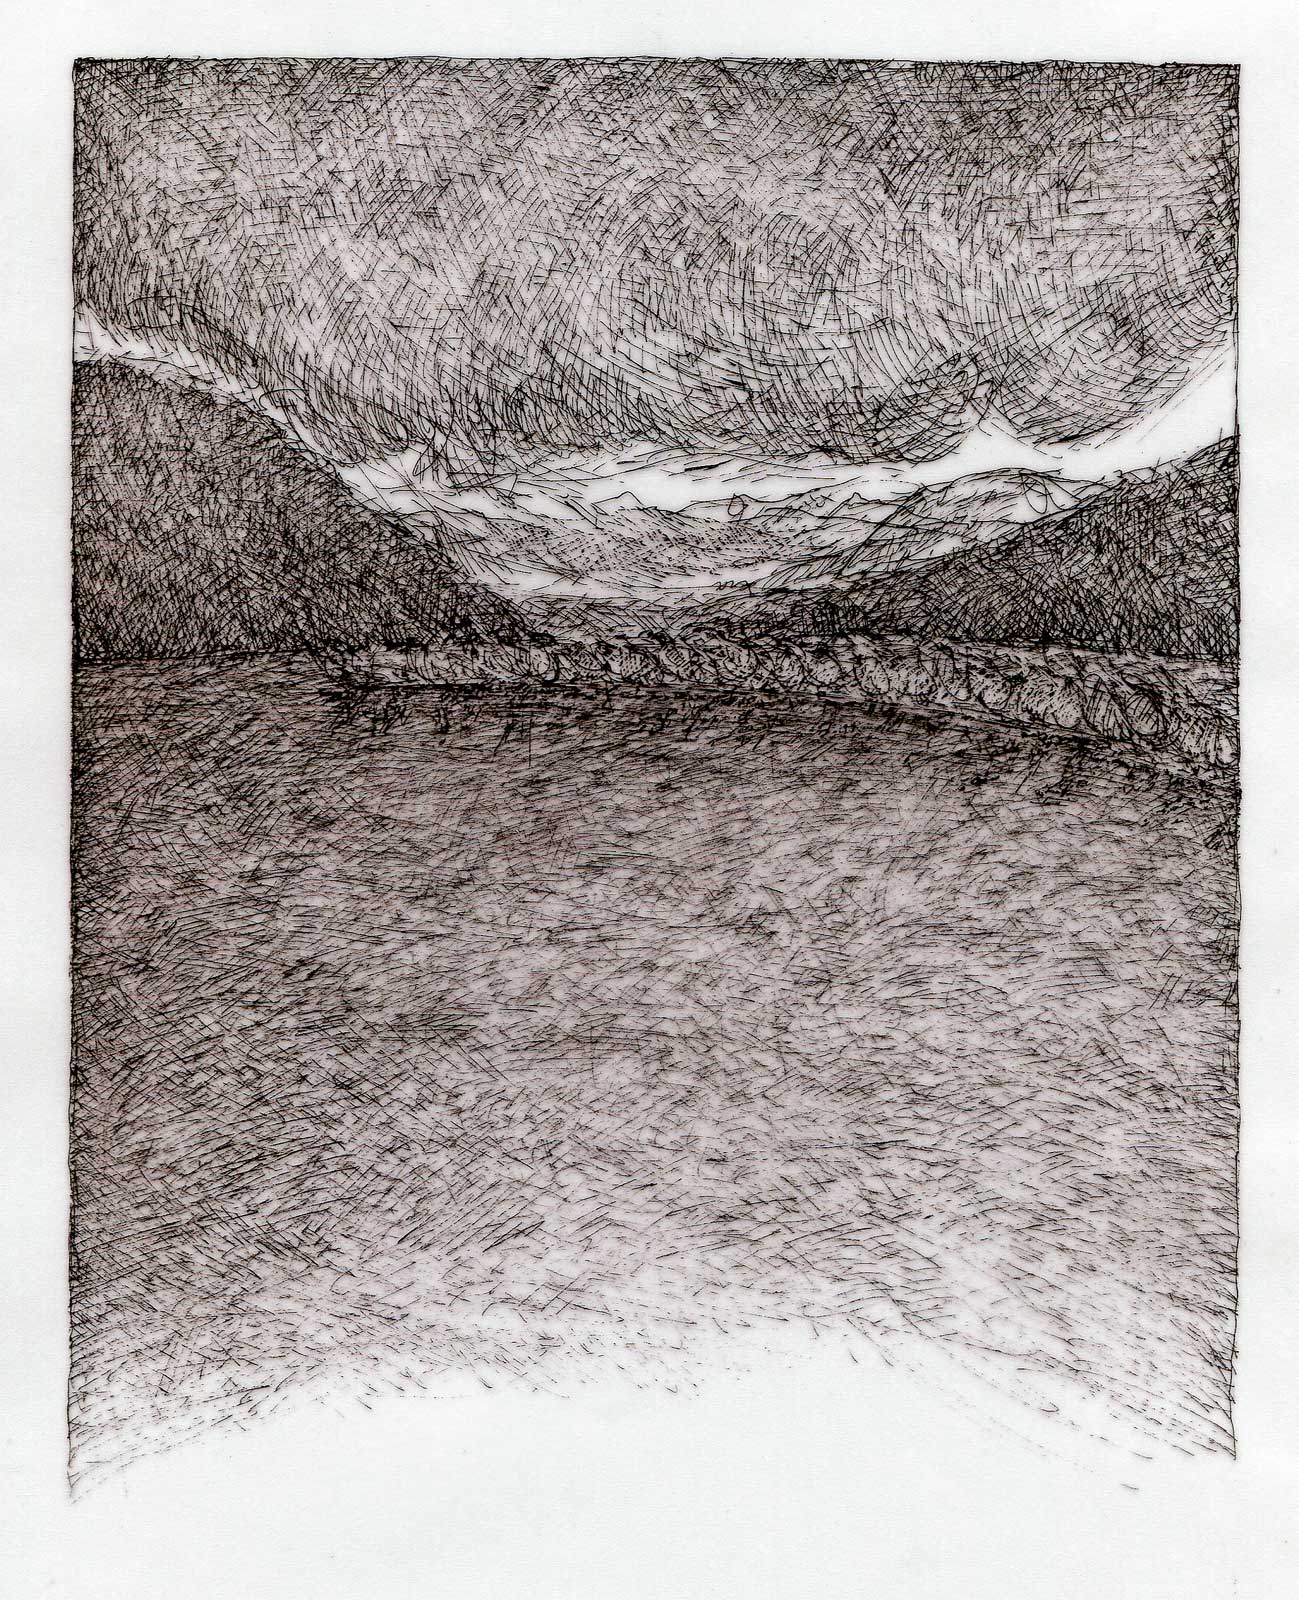 Dessin, rotring sur papier calque, 21 x 29,7 cm